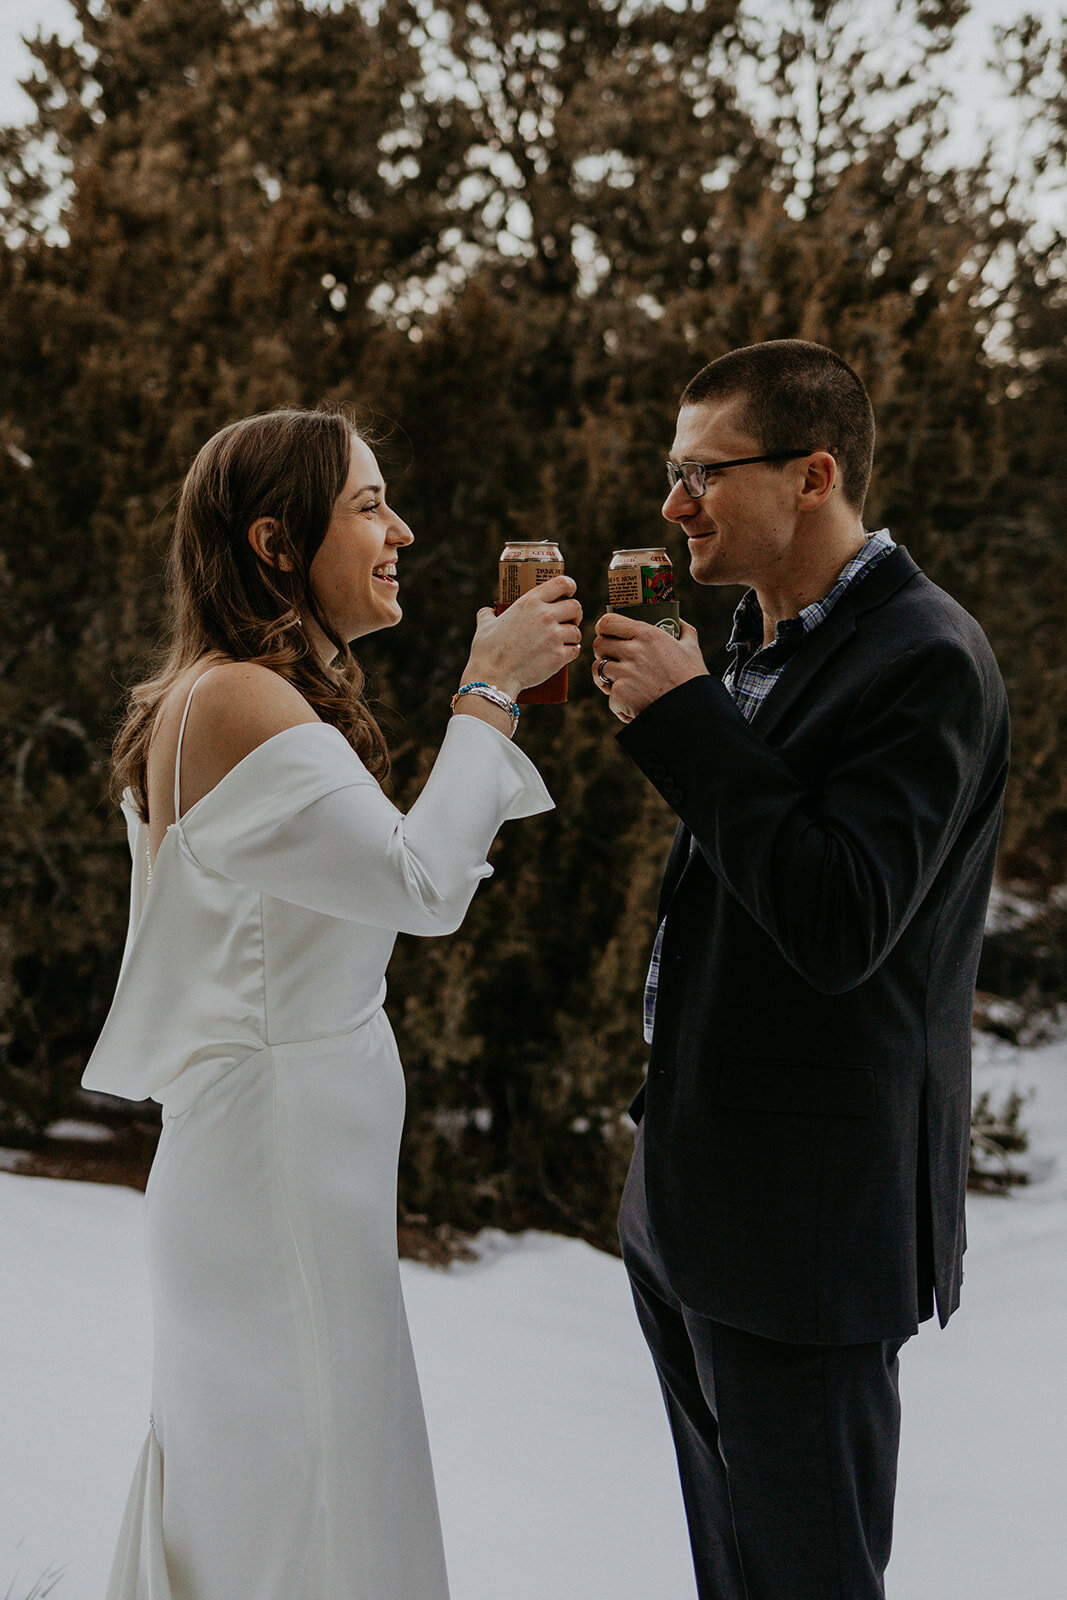 bride and groom enjoying their favorite beer in the snow